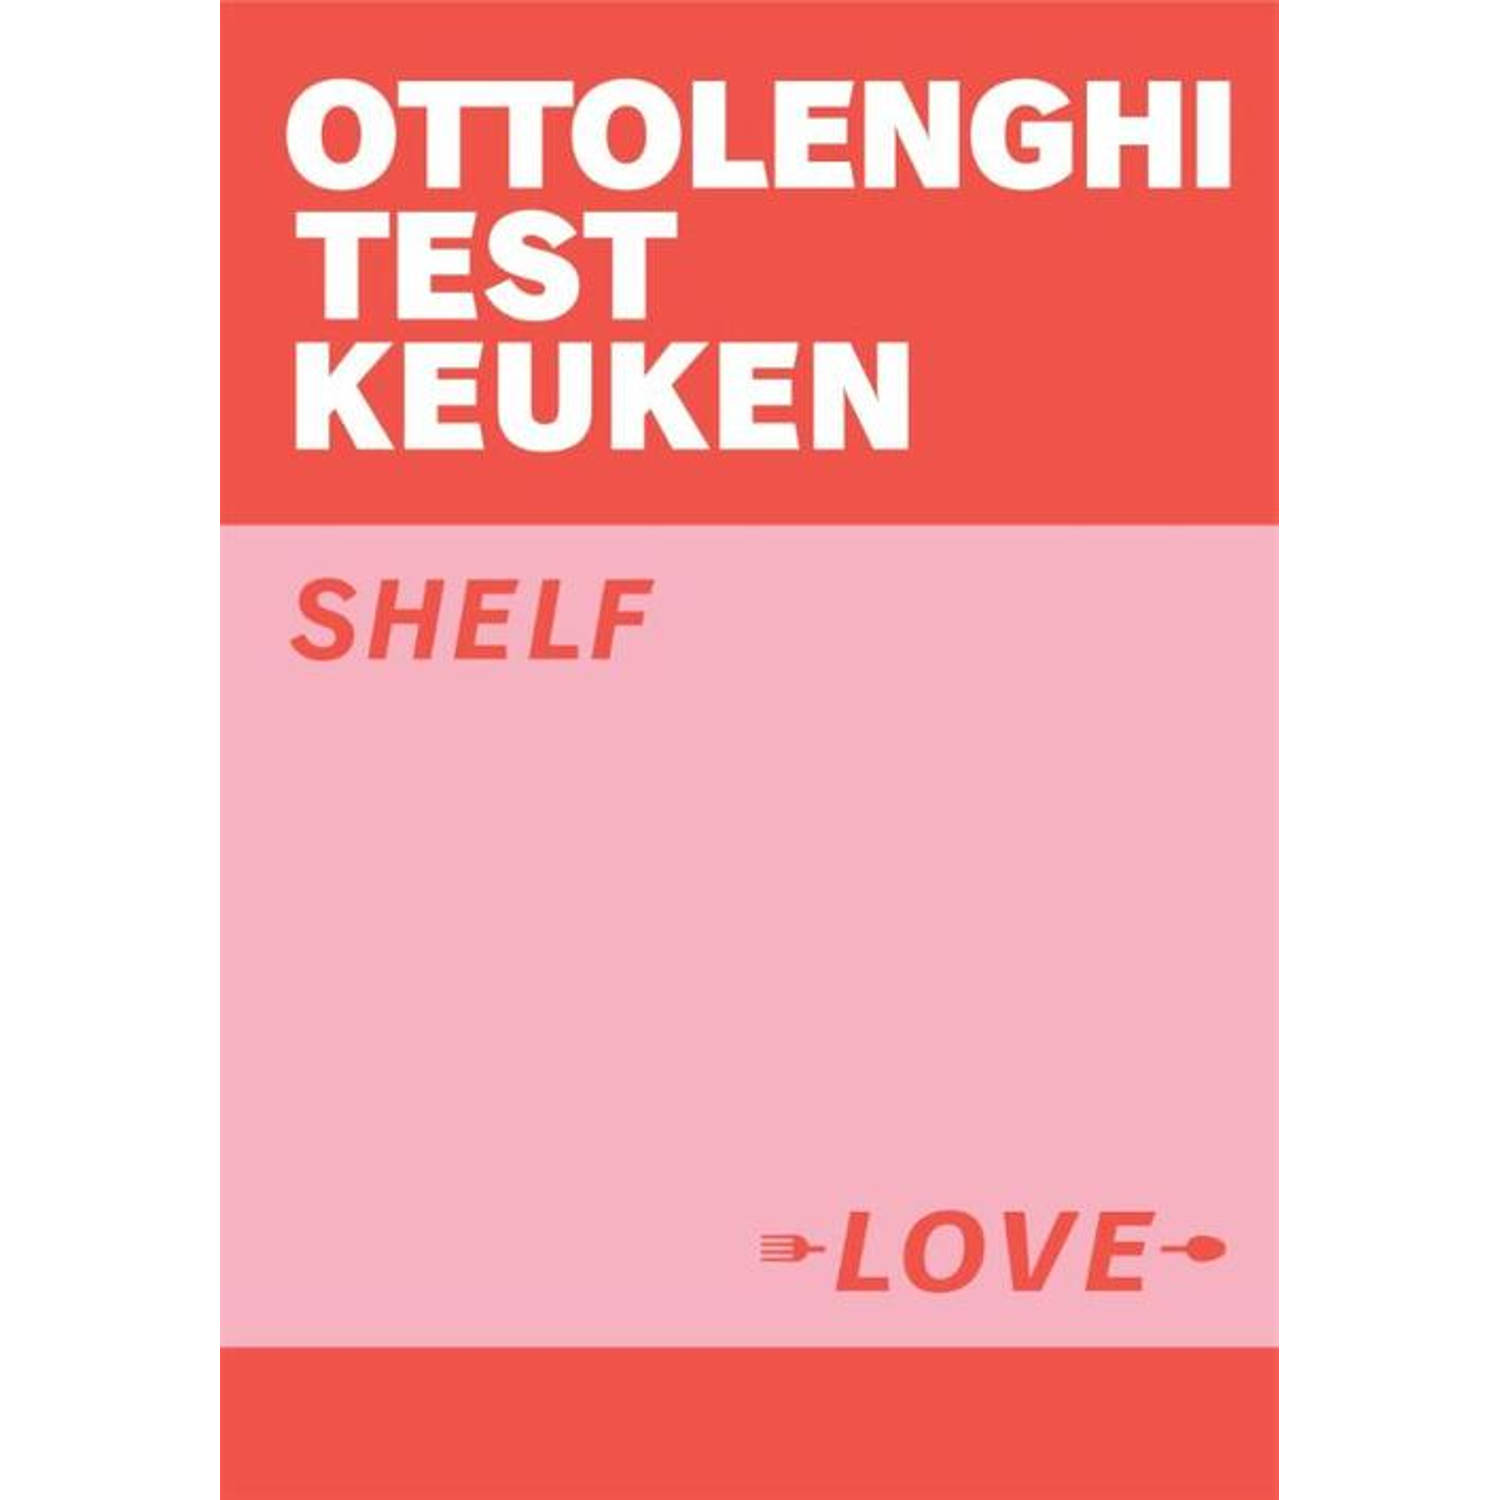 Ottolenghi Test Kitchen - Shelf Love - (ISBN:9789464040883)